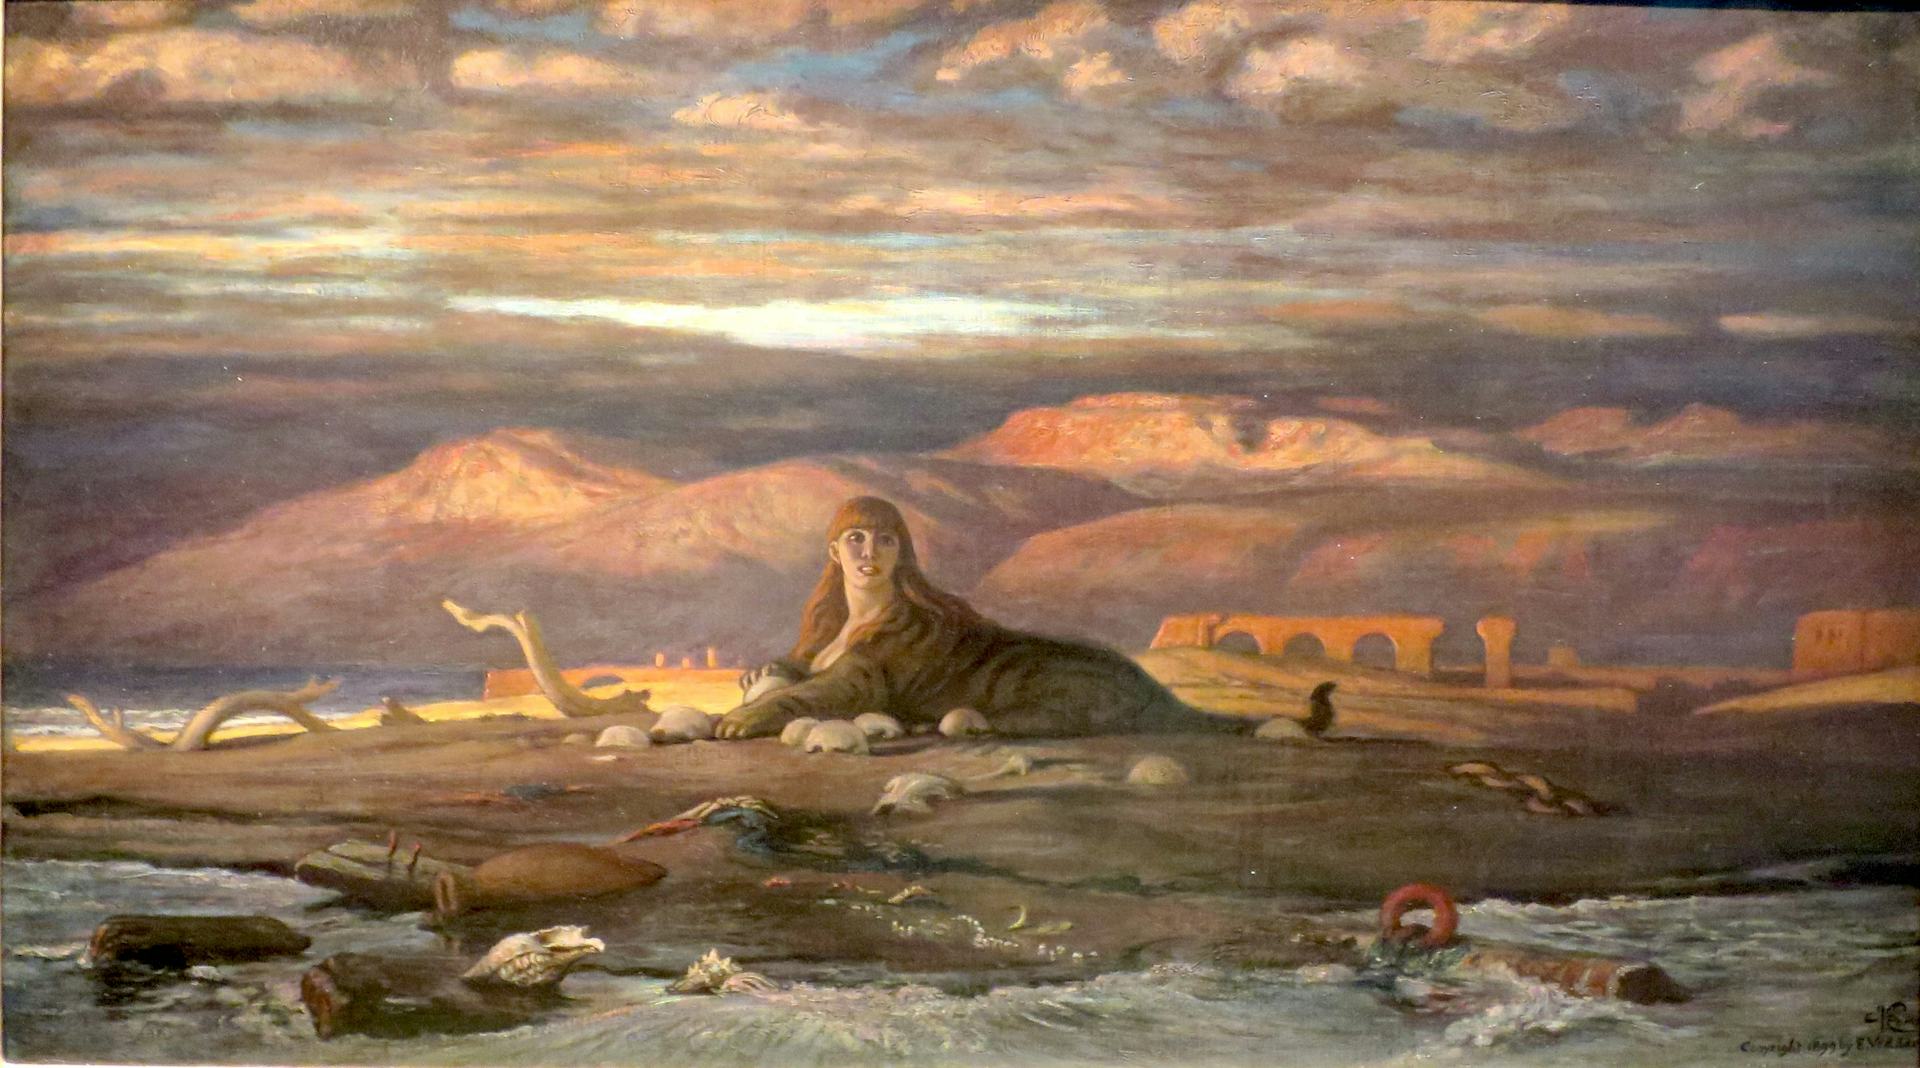 The Sphinx of the Seashore by Elihu Vedder (1879)